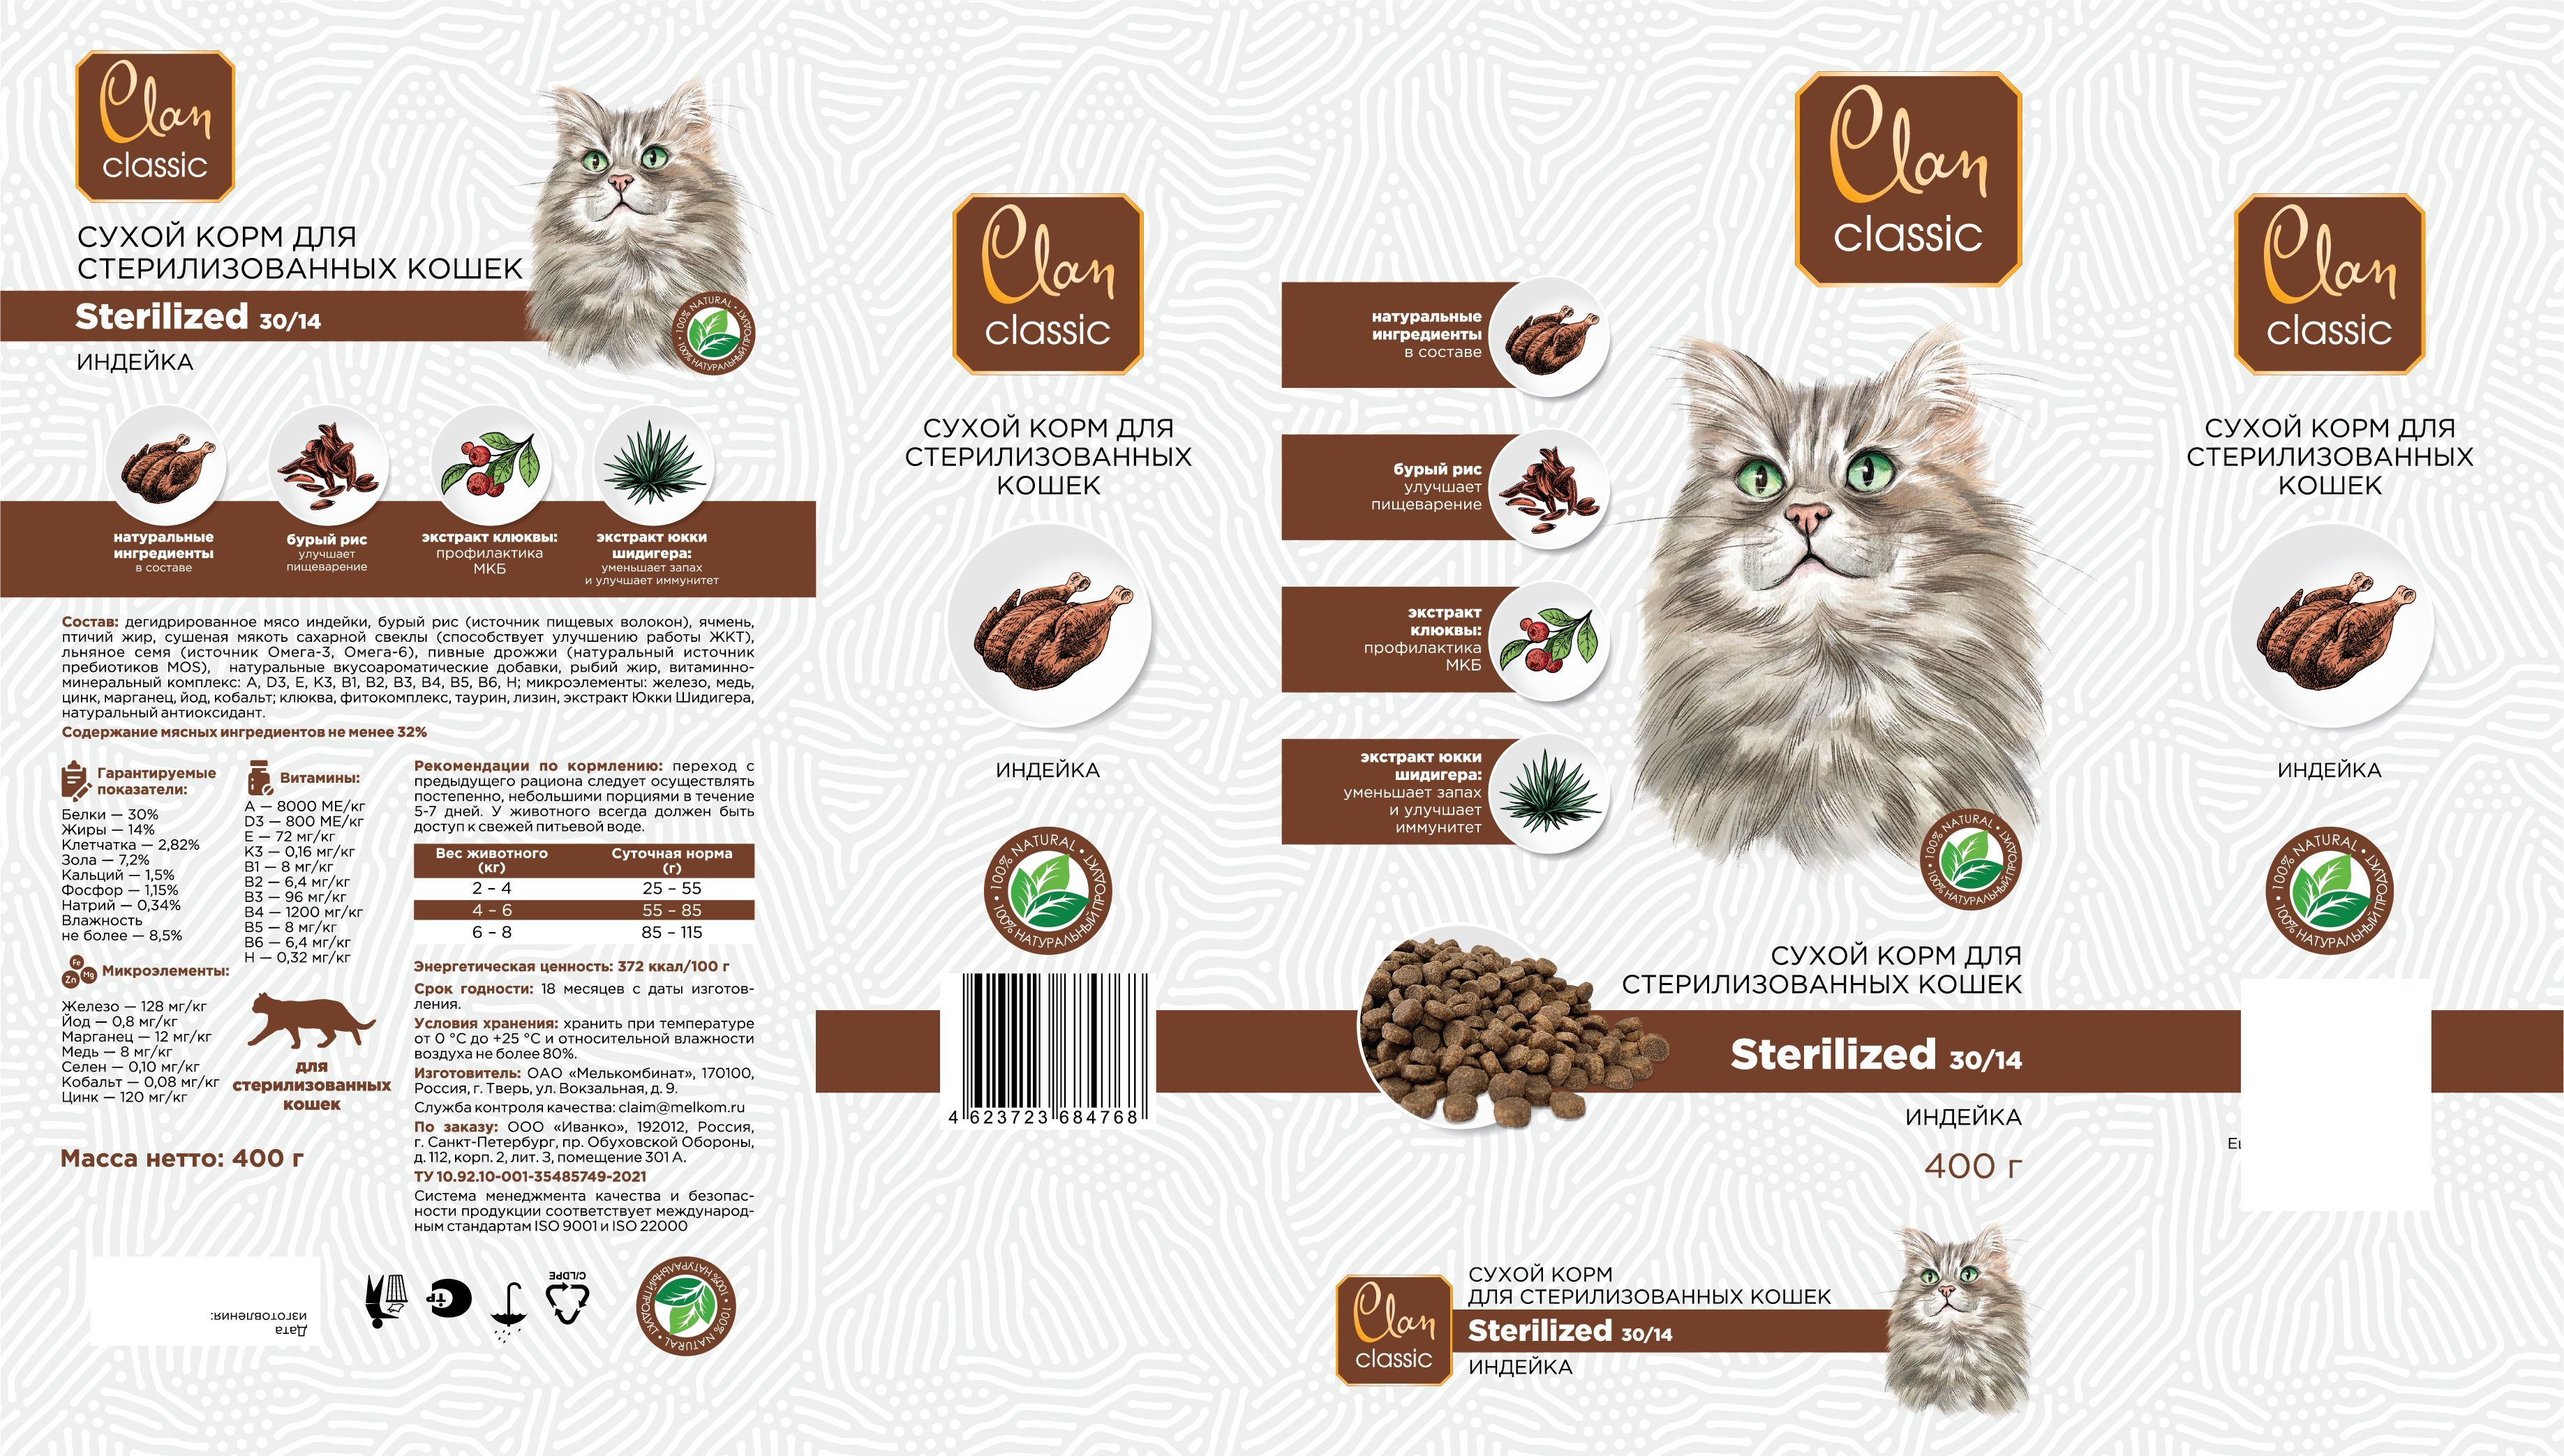 Clan classic сухой корм. Корм Clan Classic. Корм Clan Classic Sterilized 30/14 для стерилизованных кошек, с индейкой. Clan Classic Sterilized-30/14 корм для стерилизованных кошек (индейка ), 400 г. Clan Classic сухой корм для кошек.